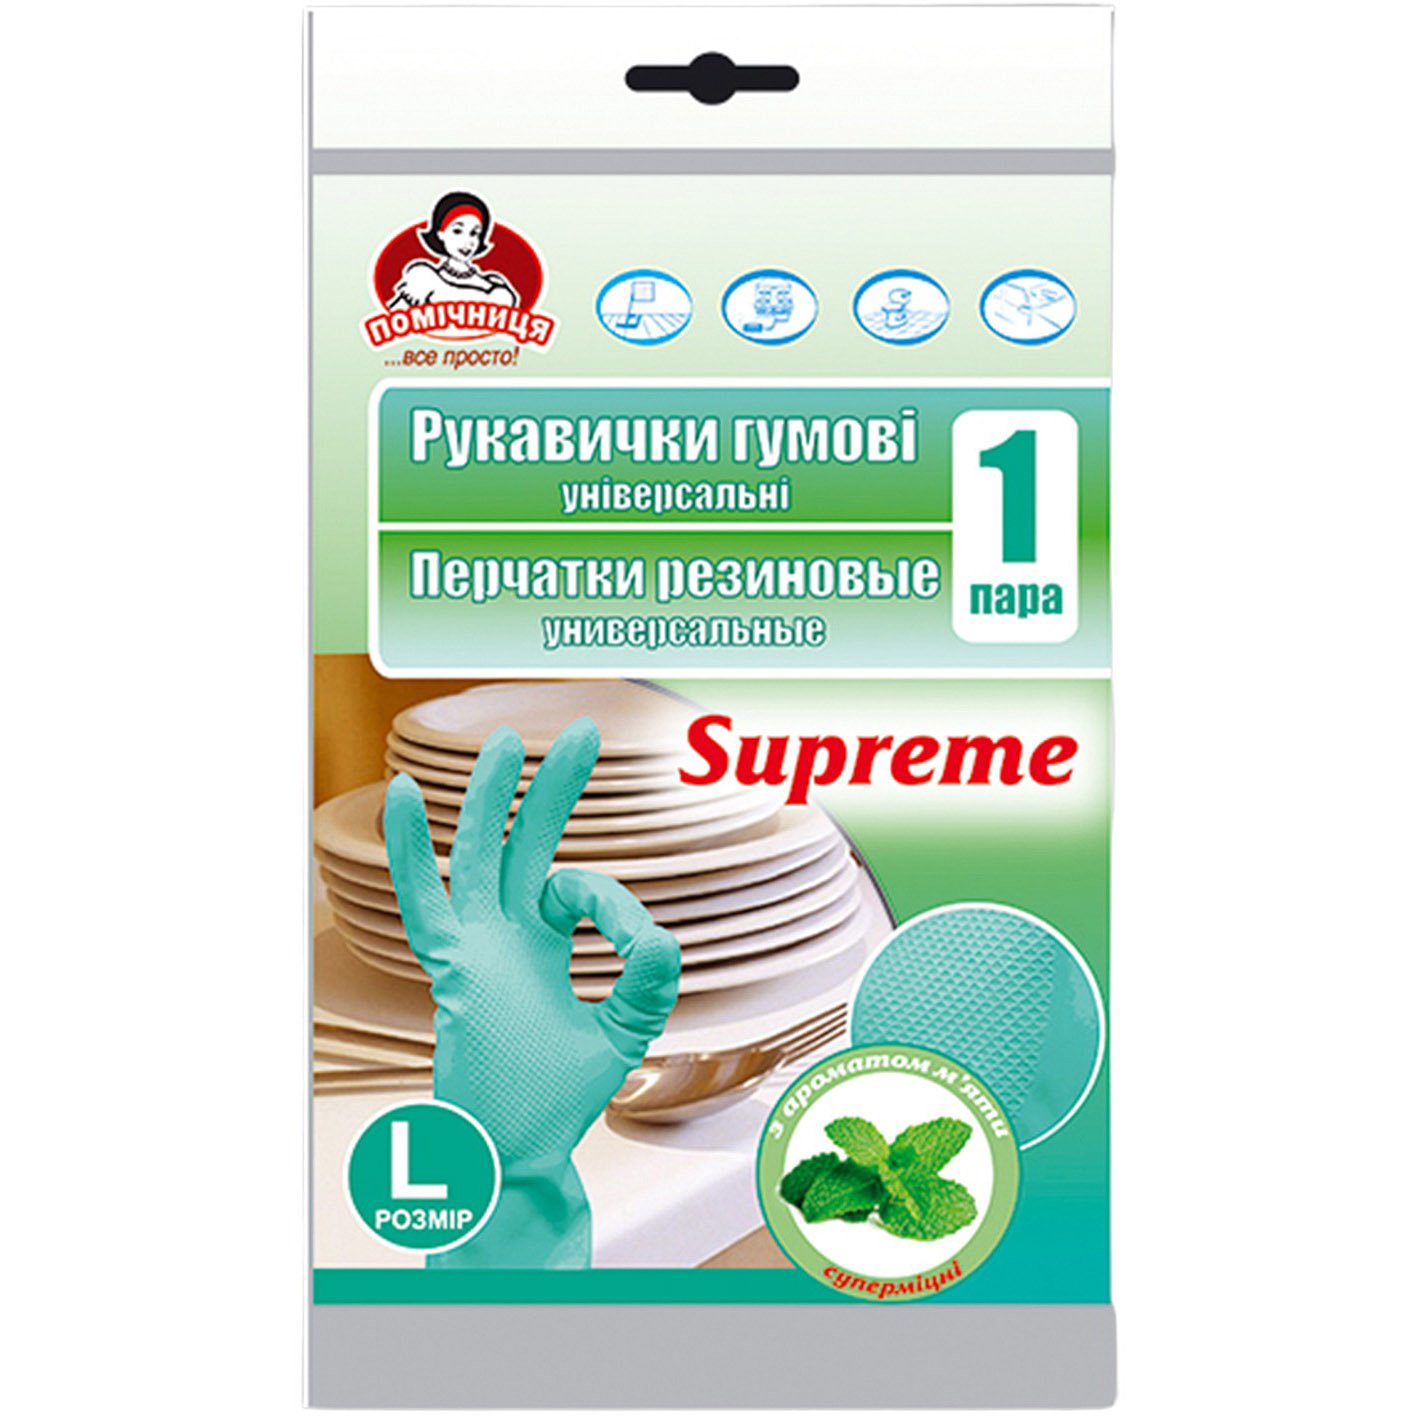 Перчатки резиновые универсальные Помічниця Supreme с ароматом мяты 8 (L) - фото 1